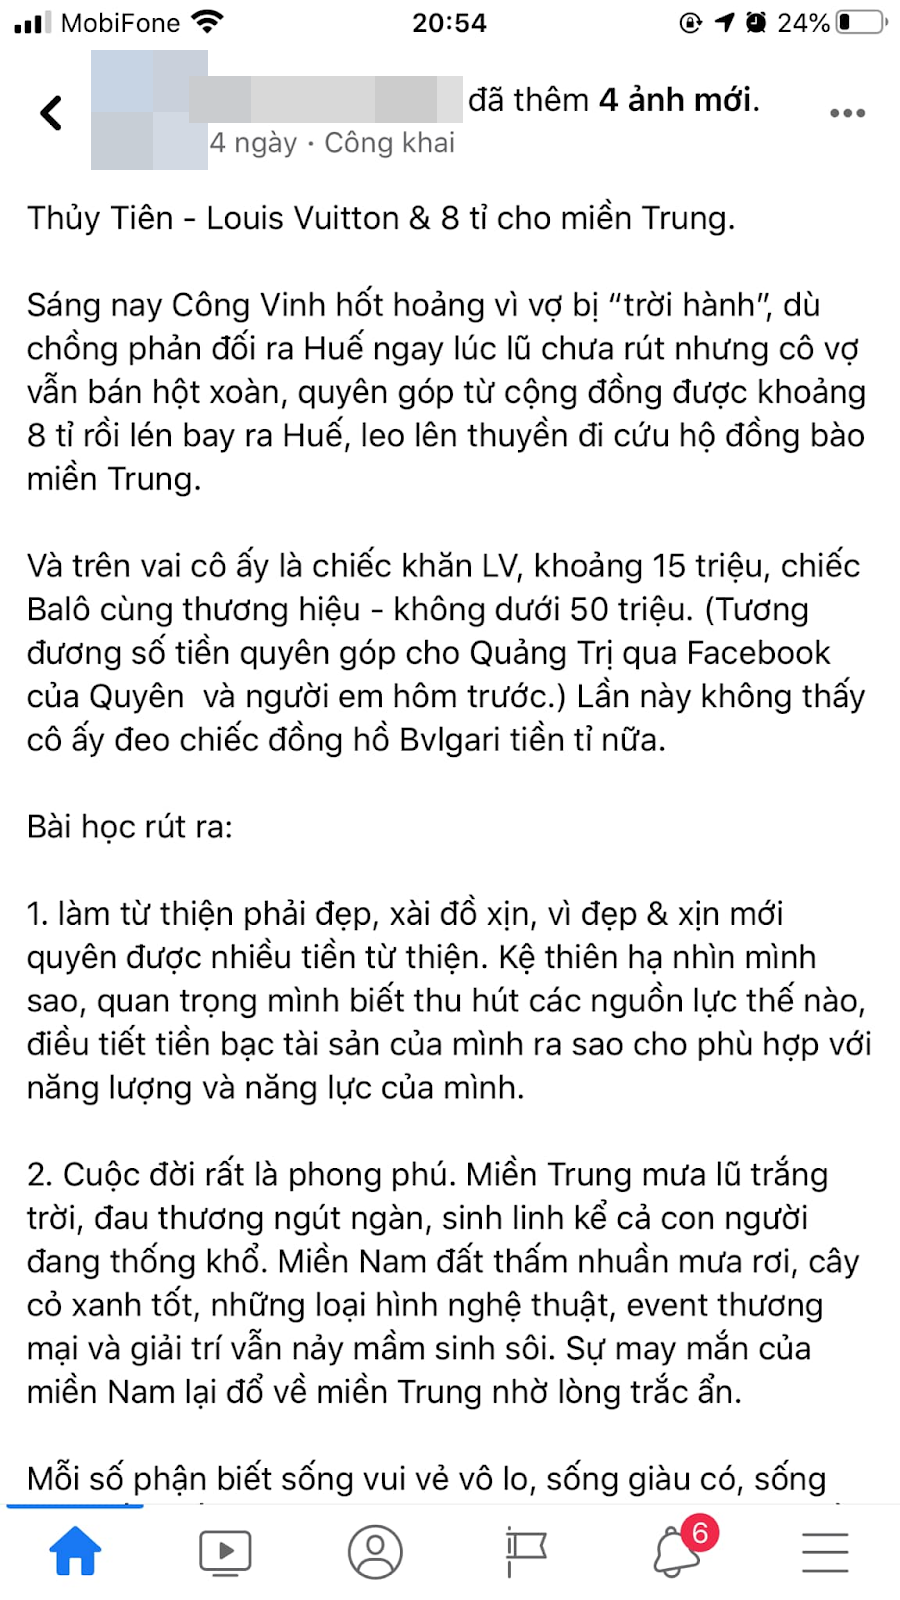 Nữ MC 'cà khịa' Thủy Tiên đeo túi 50 triệu đi miền Trung gây tranh cãi: 'Làm từ thiện phải đẹp' 2